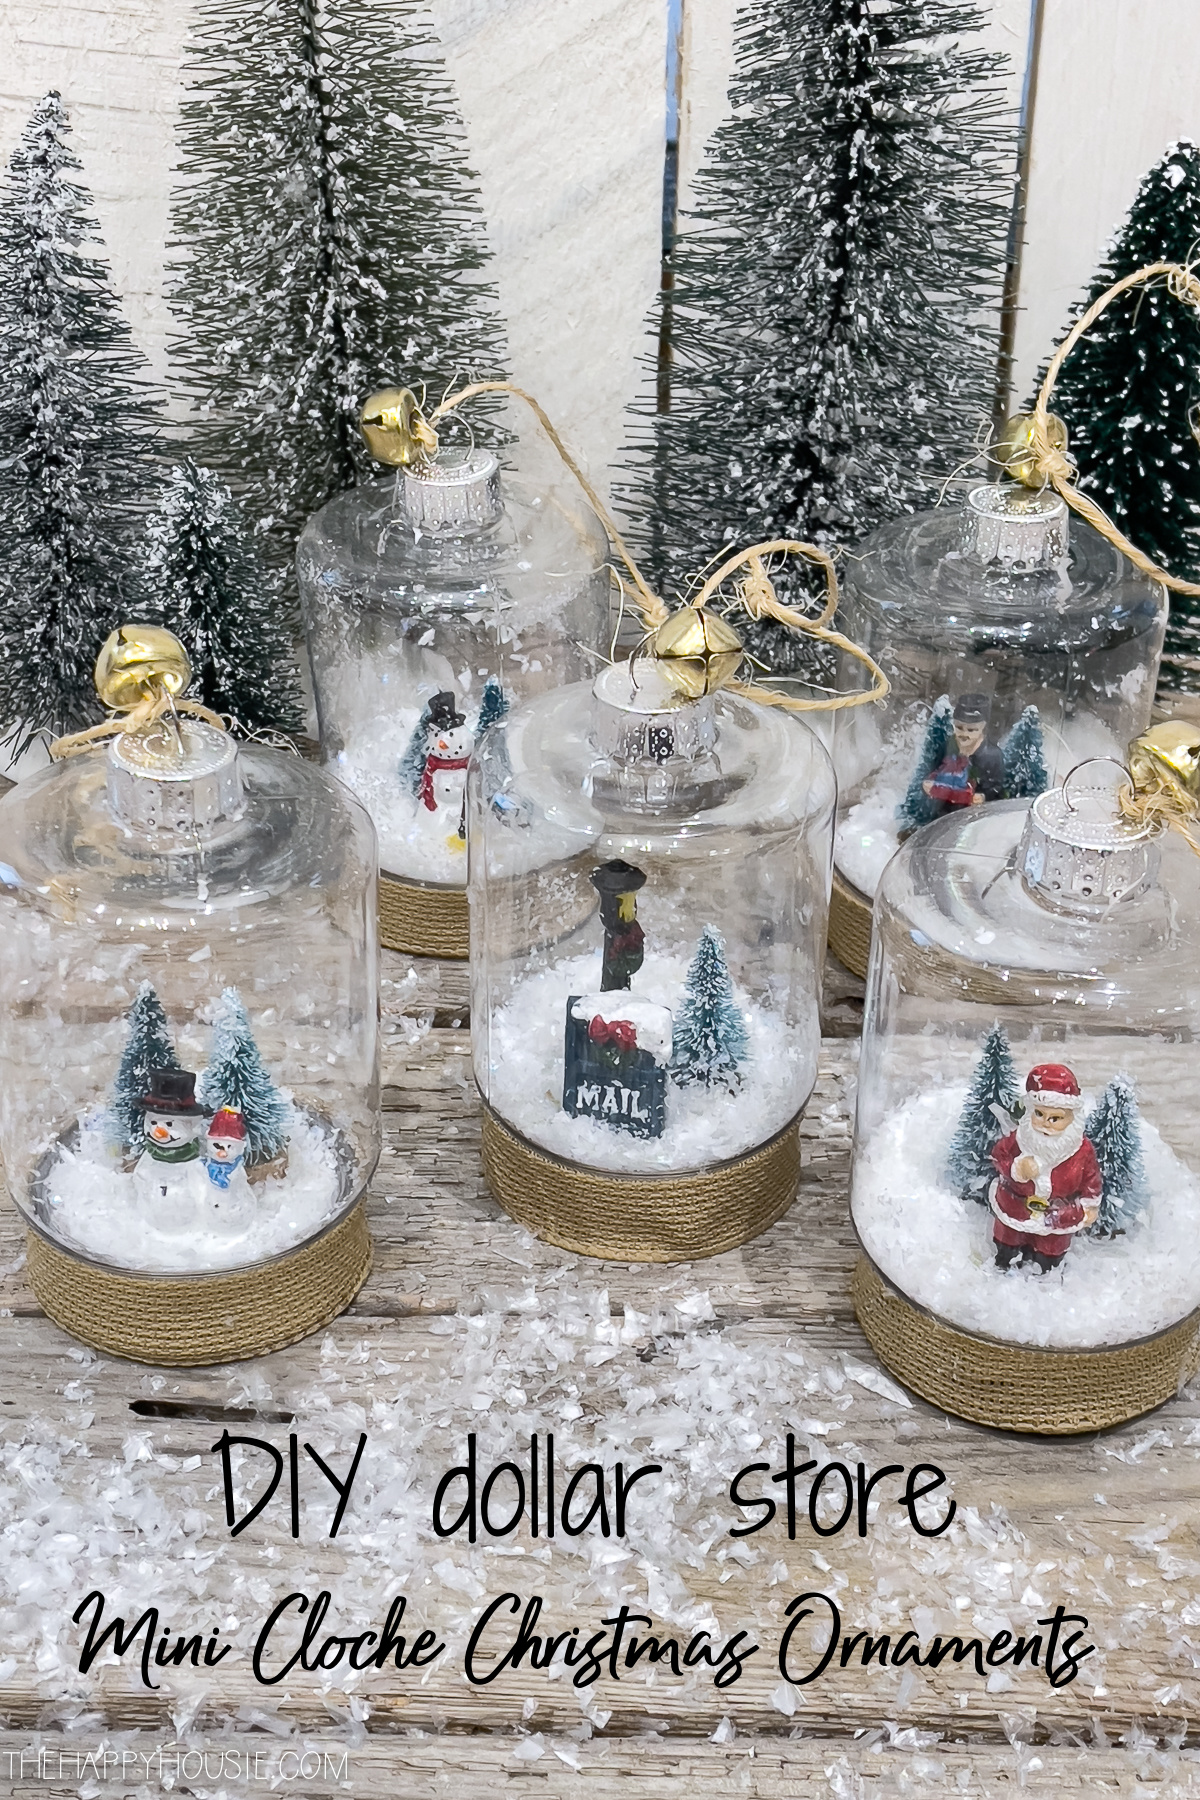 DIY Dollar Store Mini Cloche Christmas Ornaments graphic.